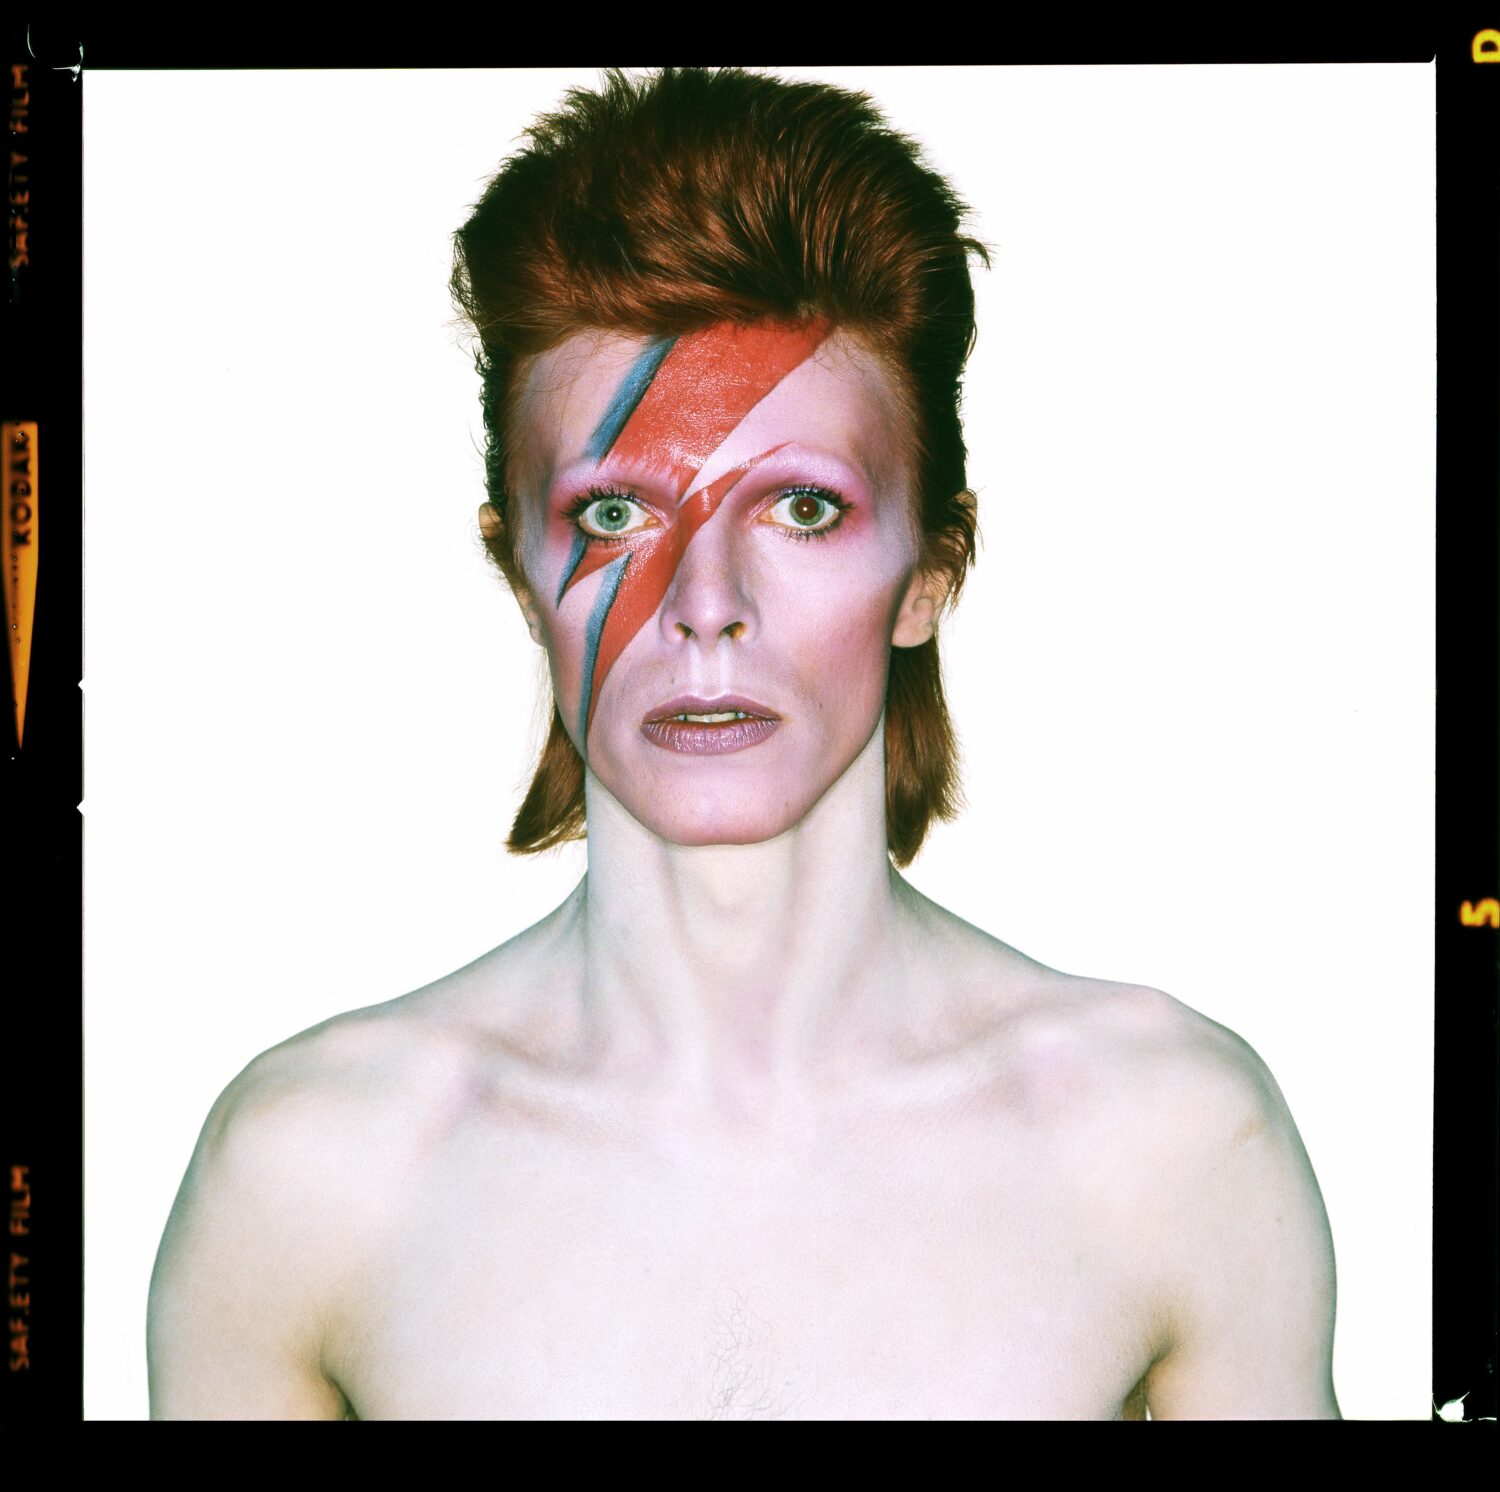 Brian Duffy: David Bowie. Aladdin Sane (Open Eyes)